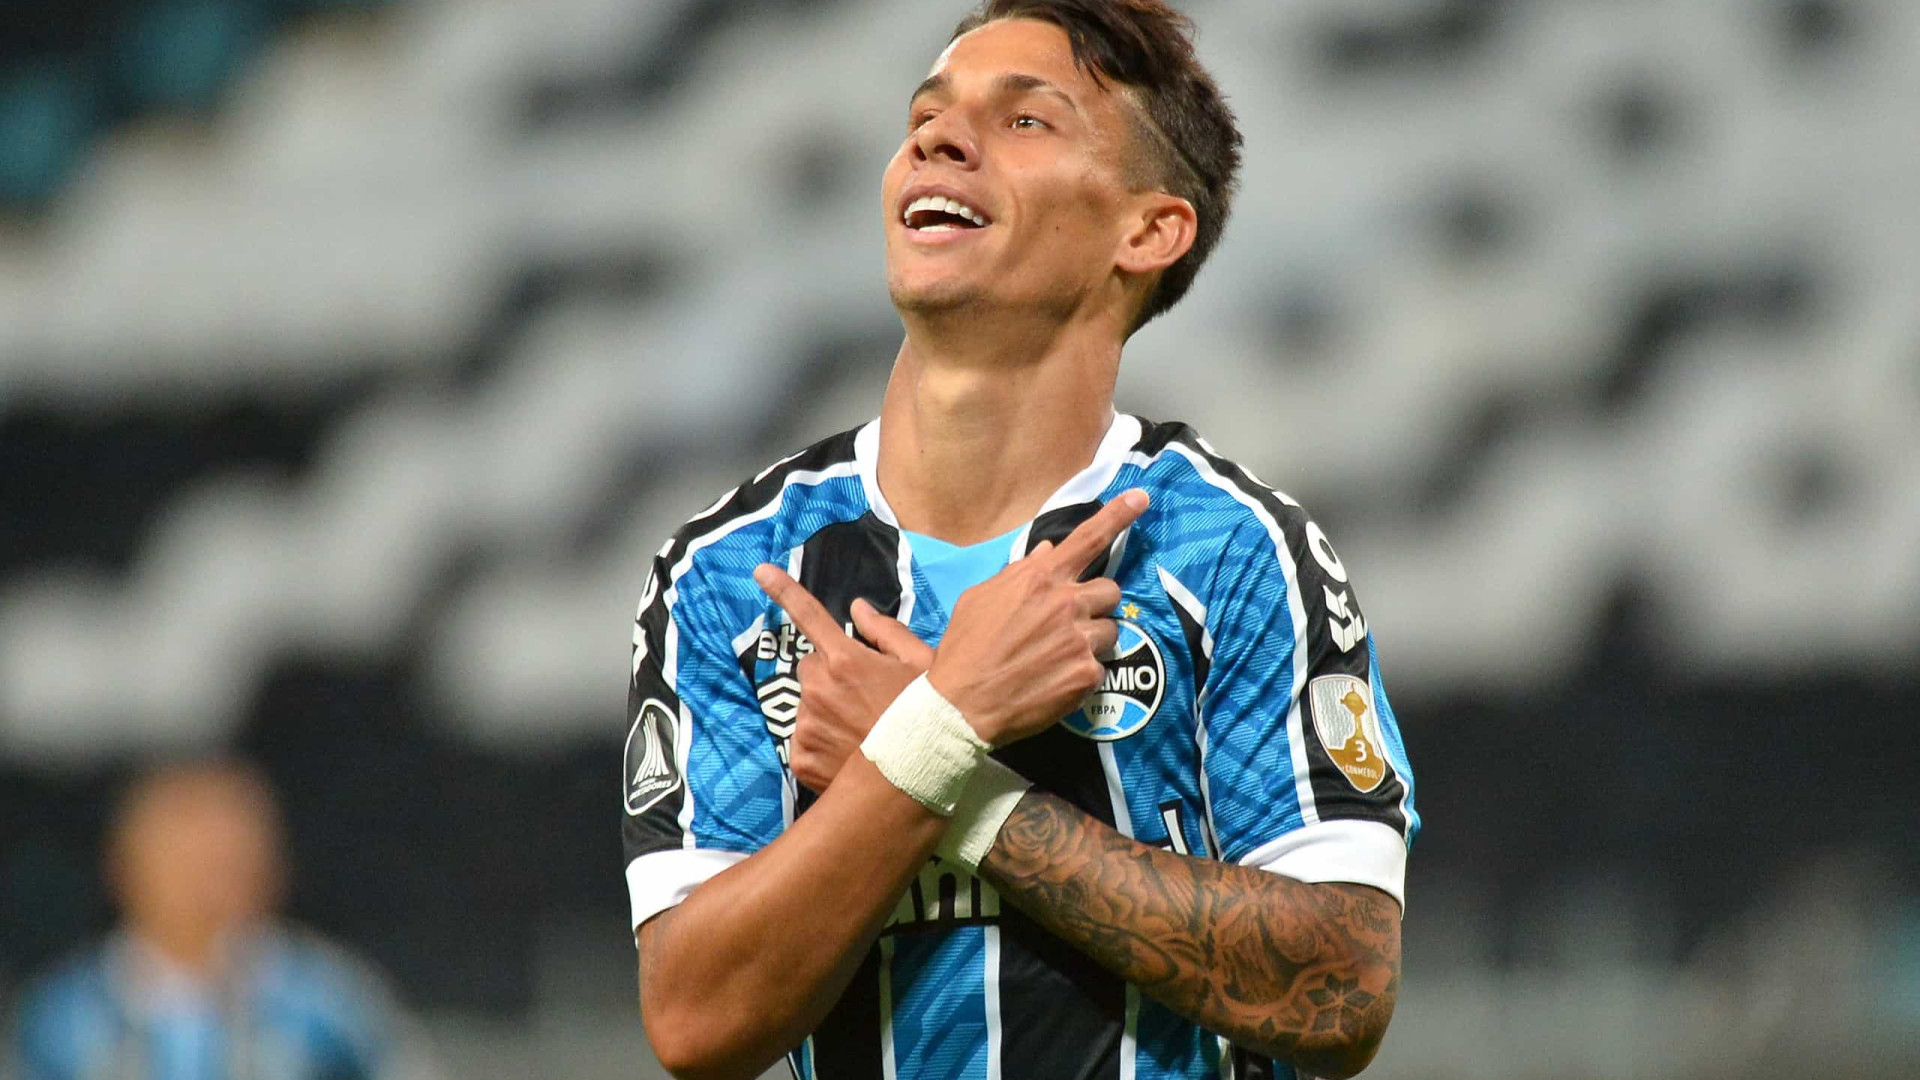 Apesar do sufoco que passou o Grêmio, Ferreira diz que o importante é vencer